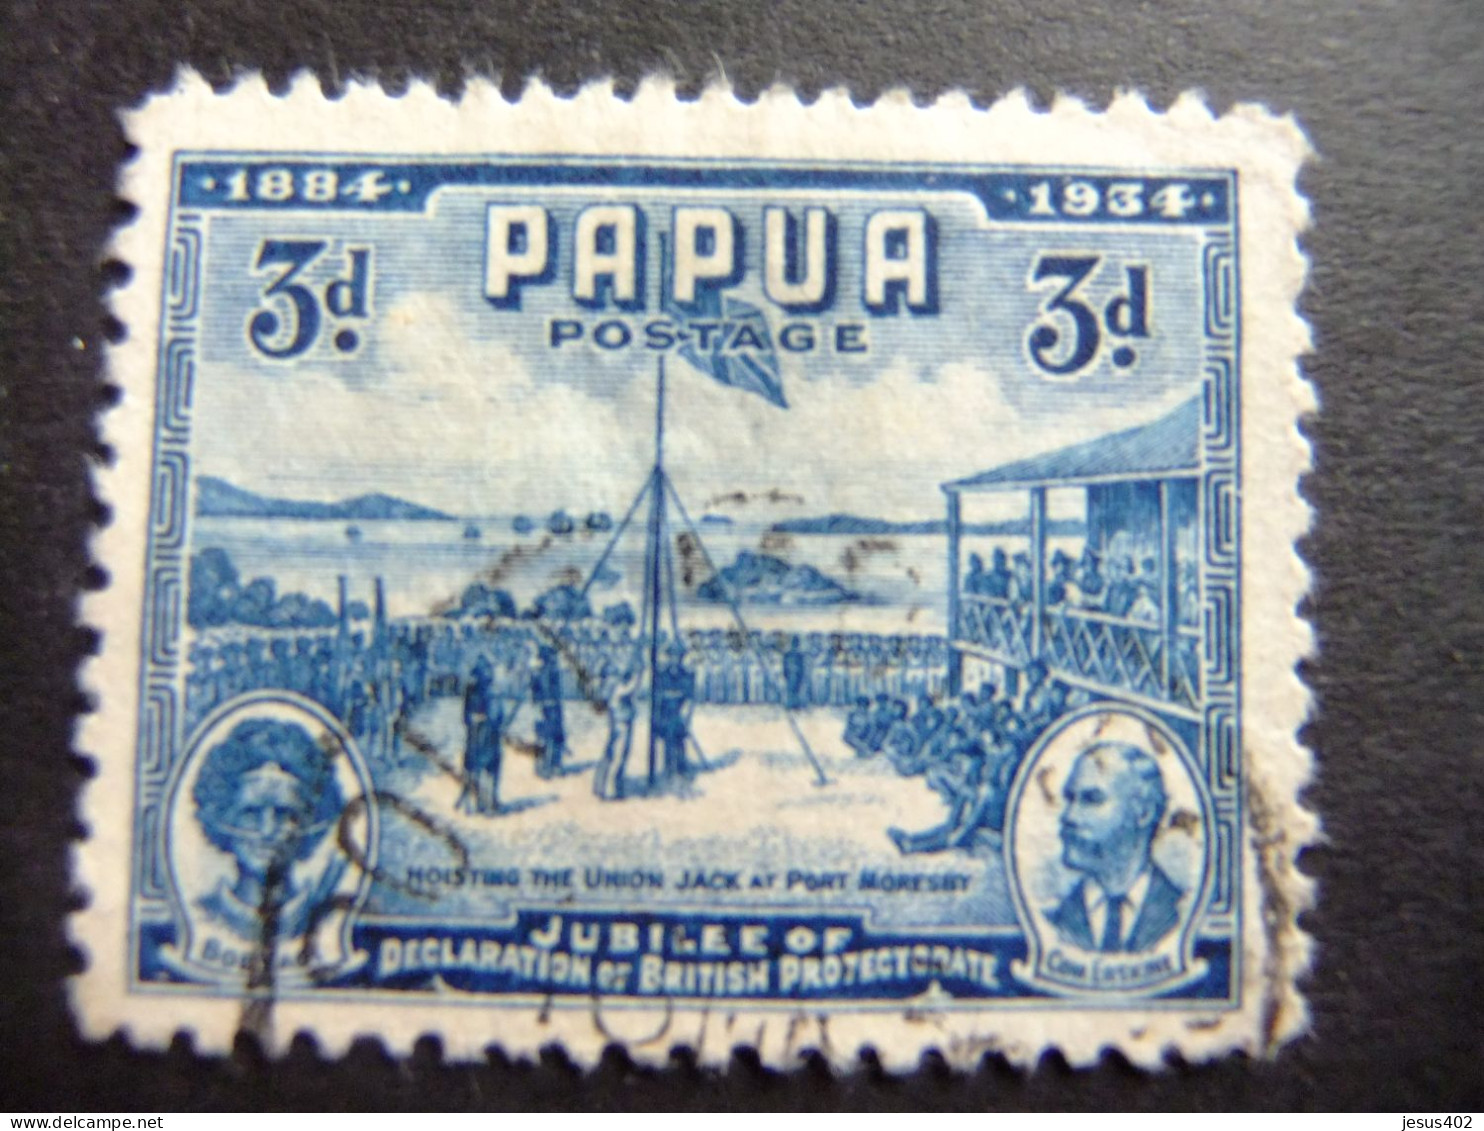 52 PAPUA NEW GUINEA PAPOUSIE 1934 / CINCUENTENARIO DEL PROTECTORADO BRITANICO / YVERT 99 FU Defec. - Papua New Guinea